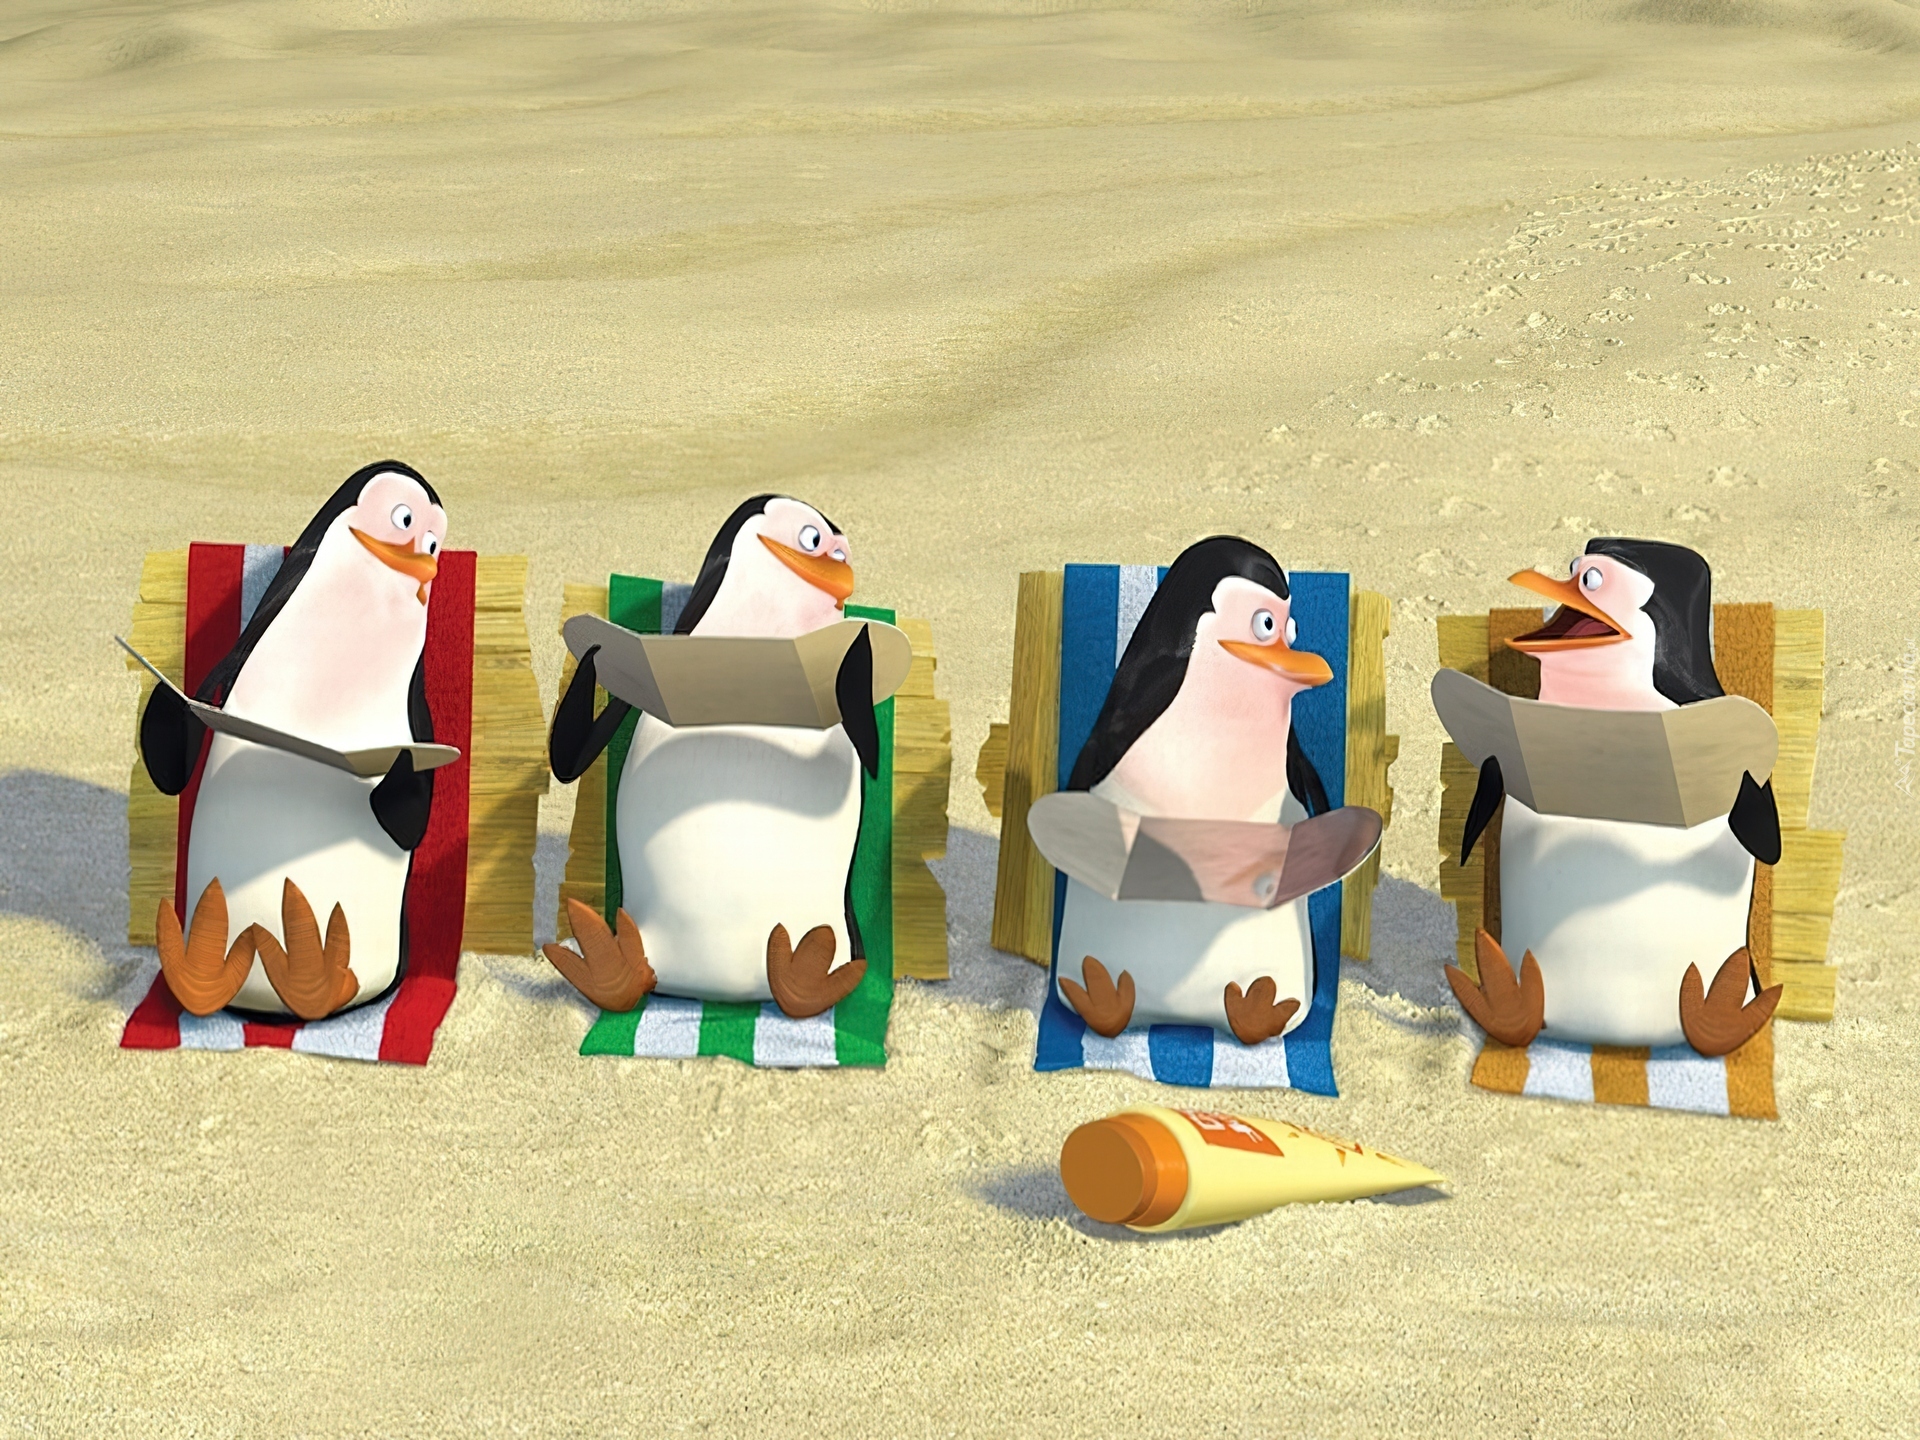 Pingwiny Z Madagaskaru, The Penguins of Madagascar, Pingwiny, Plaża